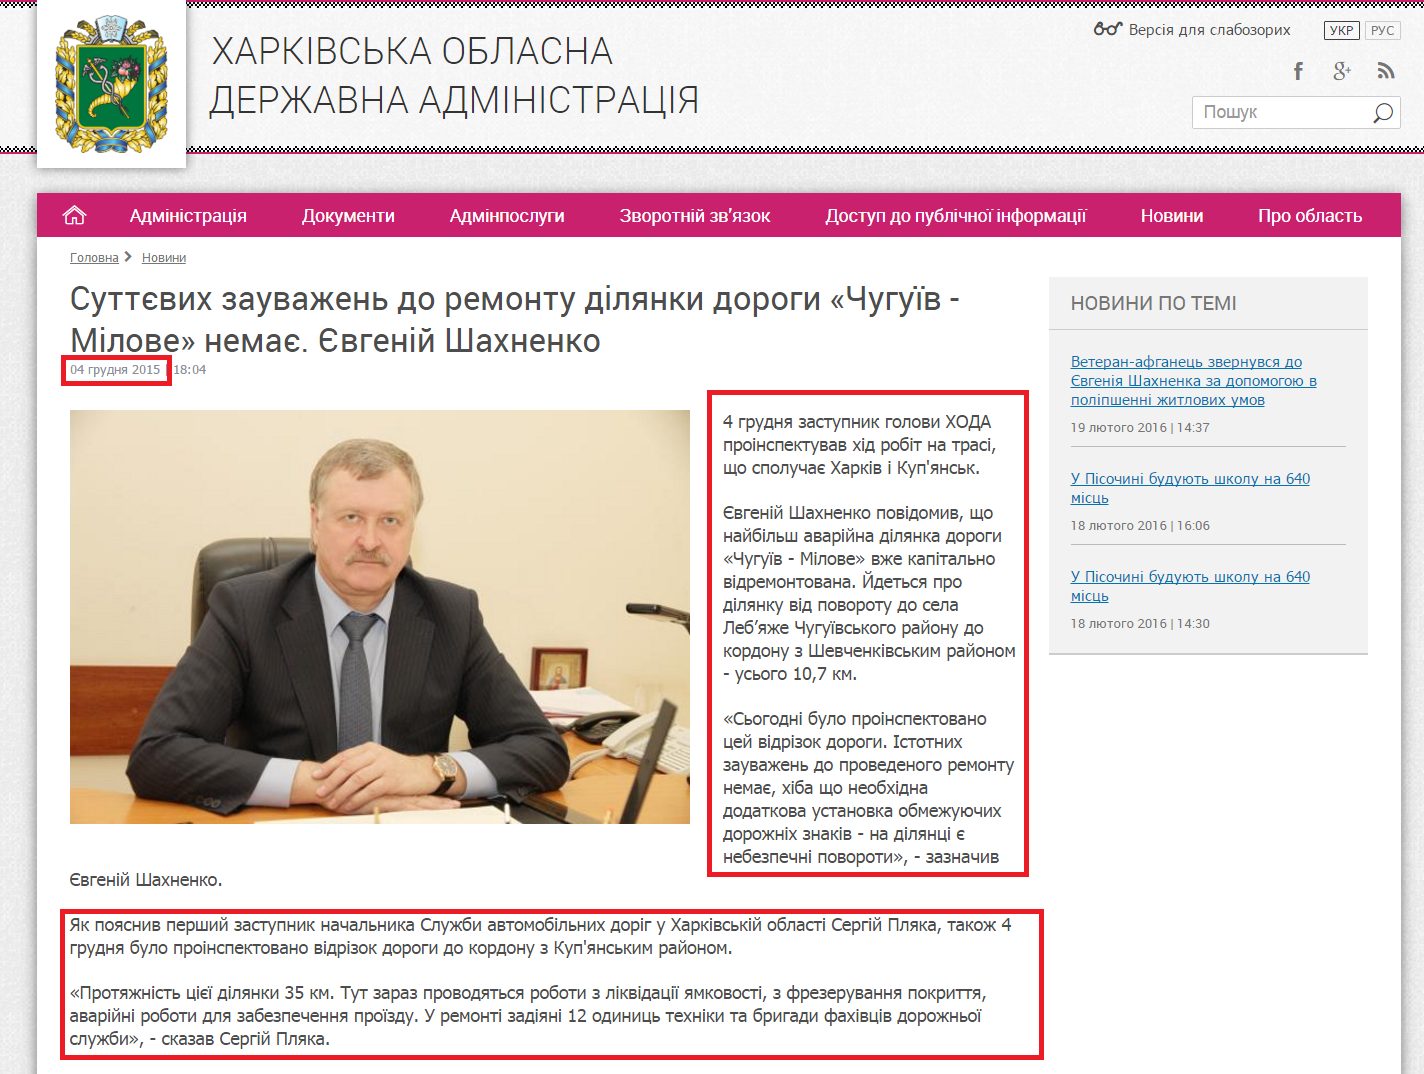 http://kharkivoda.gov.ua/news/77779